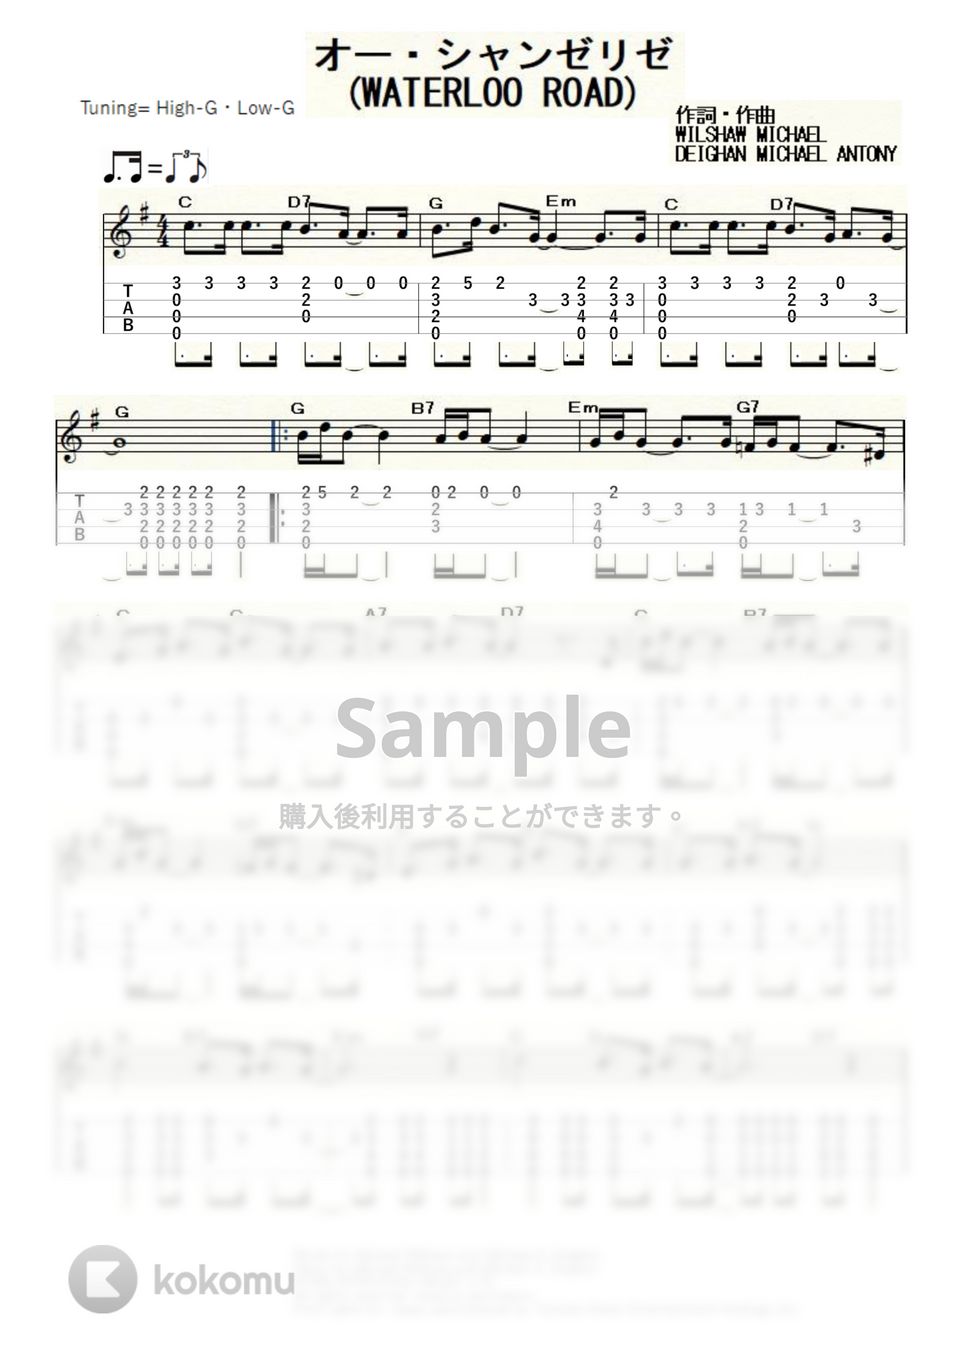 ダニエル・ビダル - オー・シャンゼリゼ (ｳｸﾚﾚｿﾛ / High-G,Low-G / 中級) by ukulelepapa